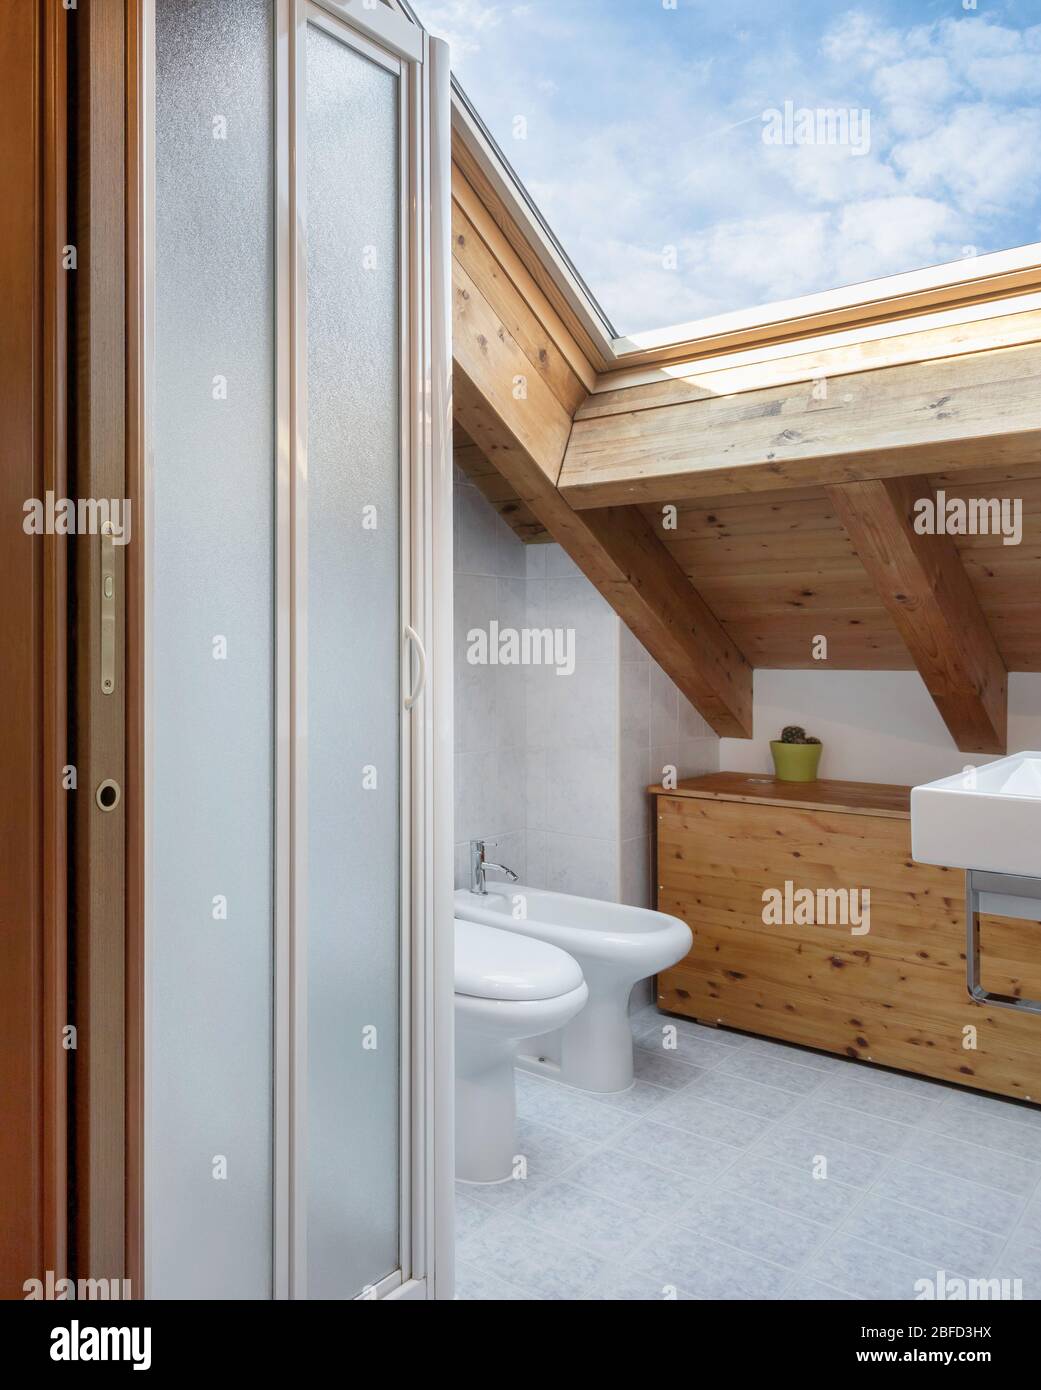 Praktisches, gemütliches Badezimmer mit Toilette, Schrank und Waschbecken. Dach mit freiliegenden Holzbalken und Dachfenster. Stockfoto